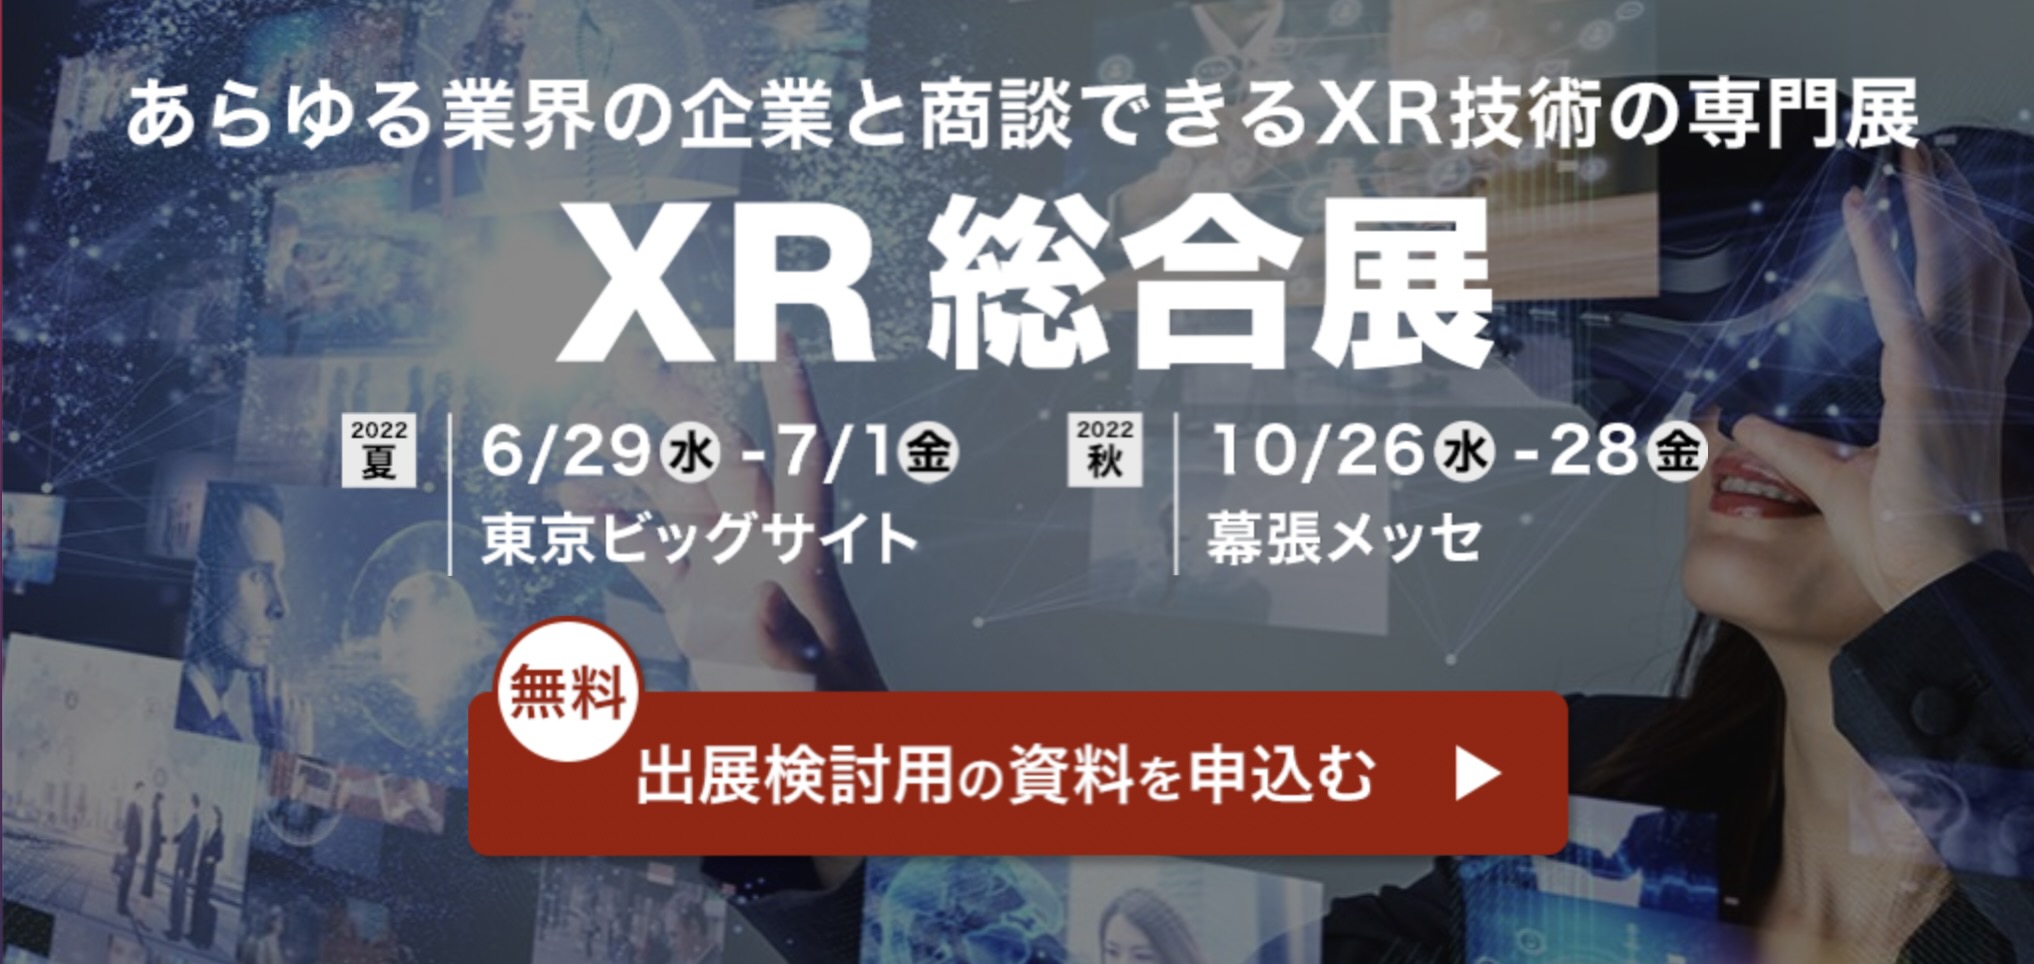 AR/VR/MRの展示会「XR総合展」開催！メタバースやデジタルツインに特化したゾーンが登場